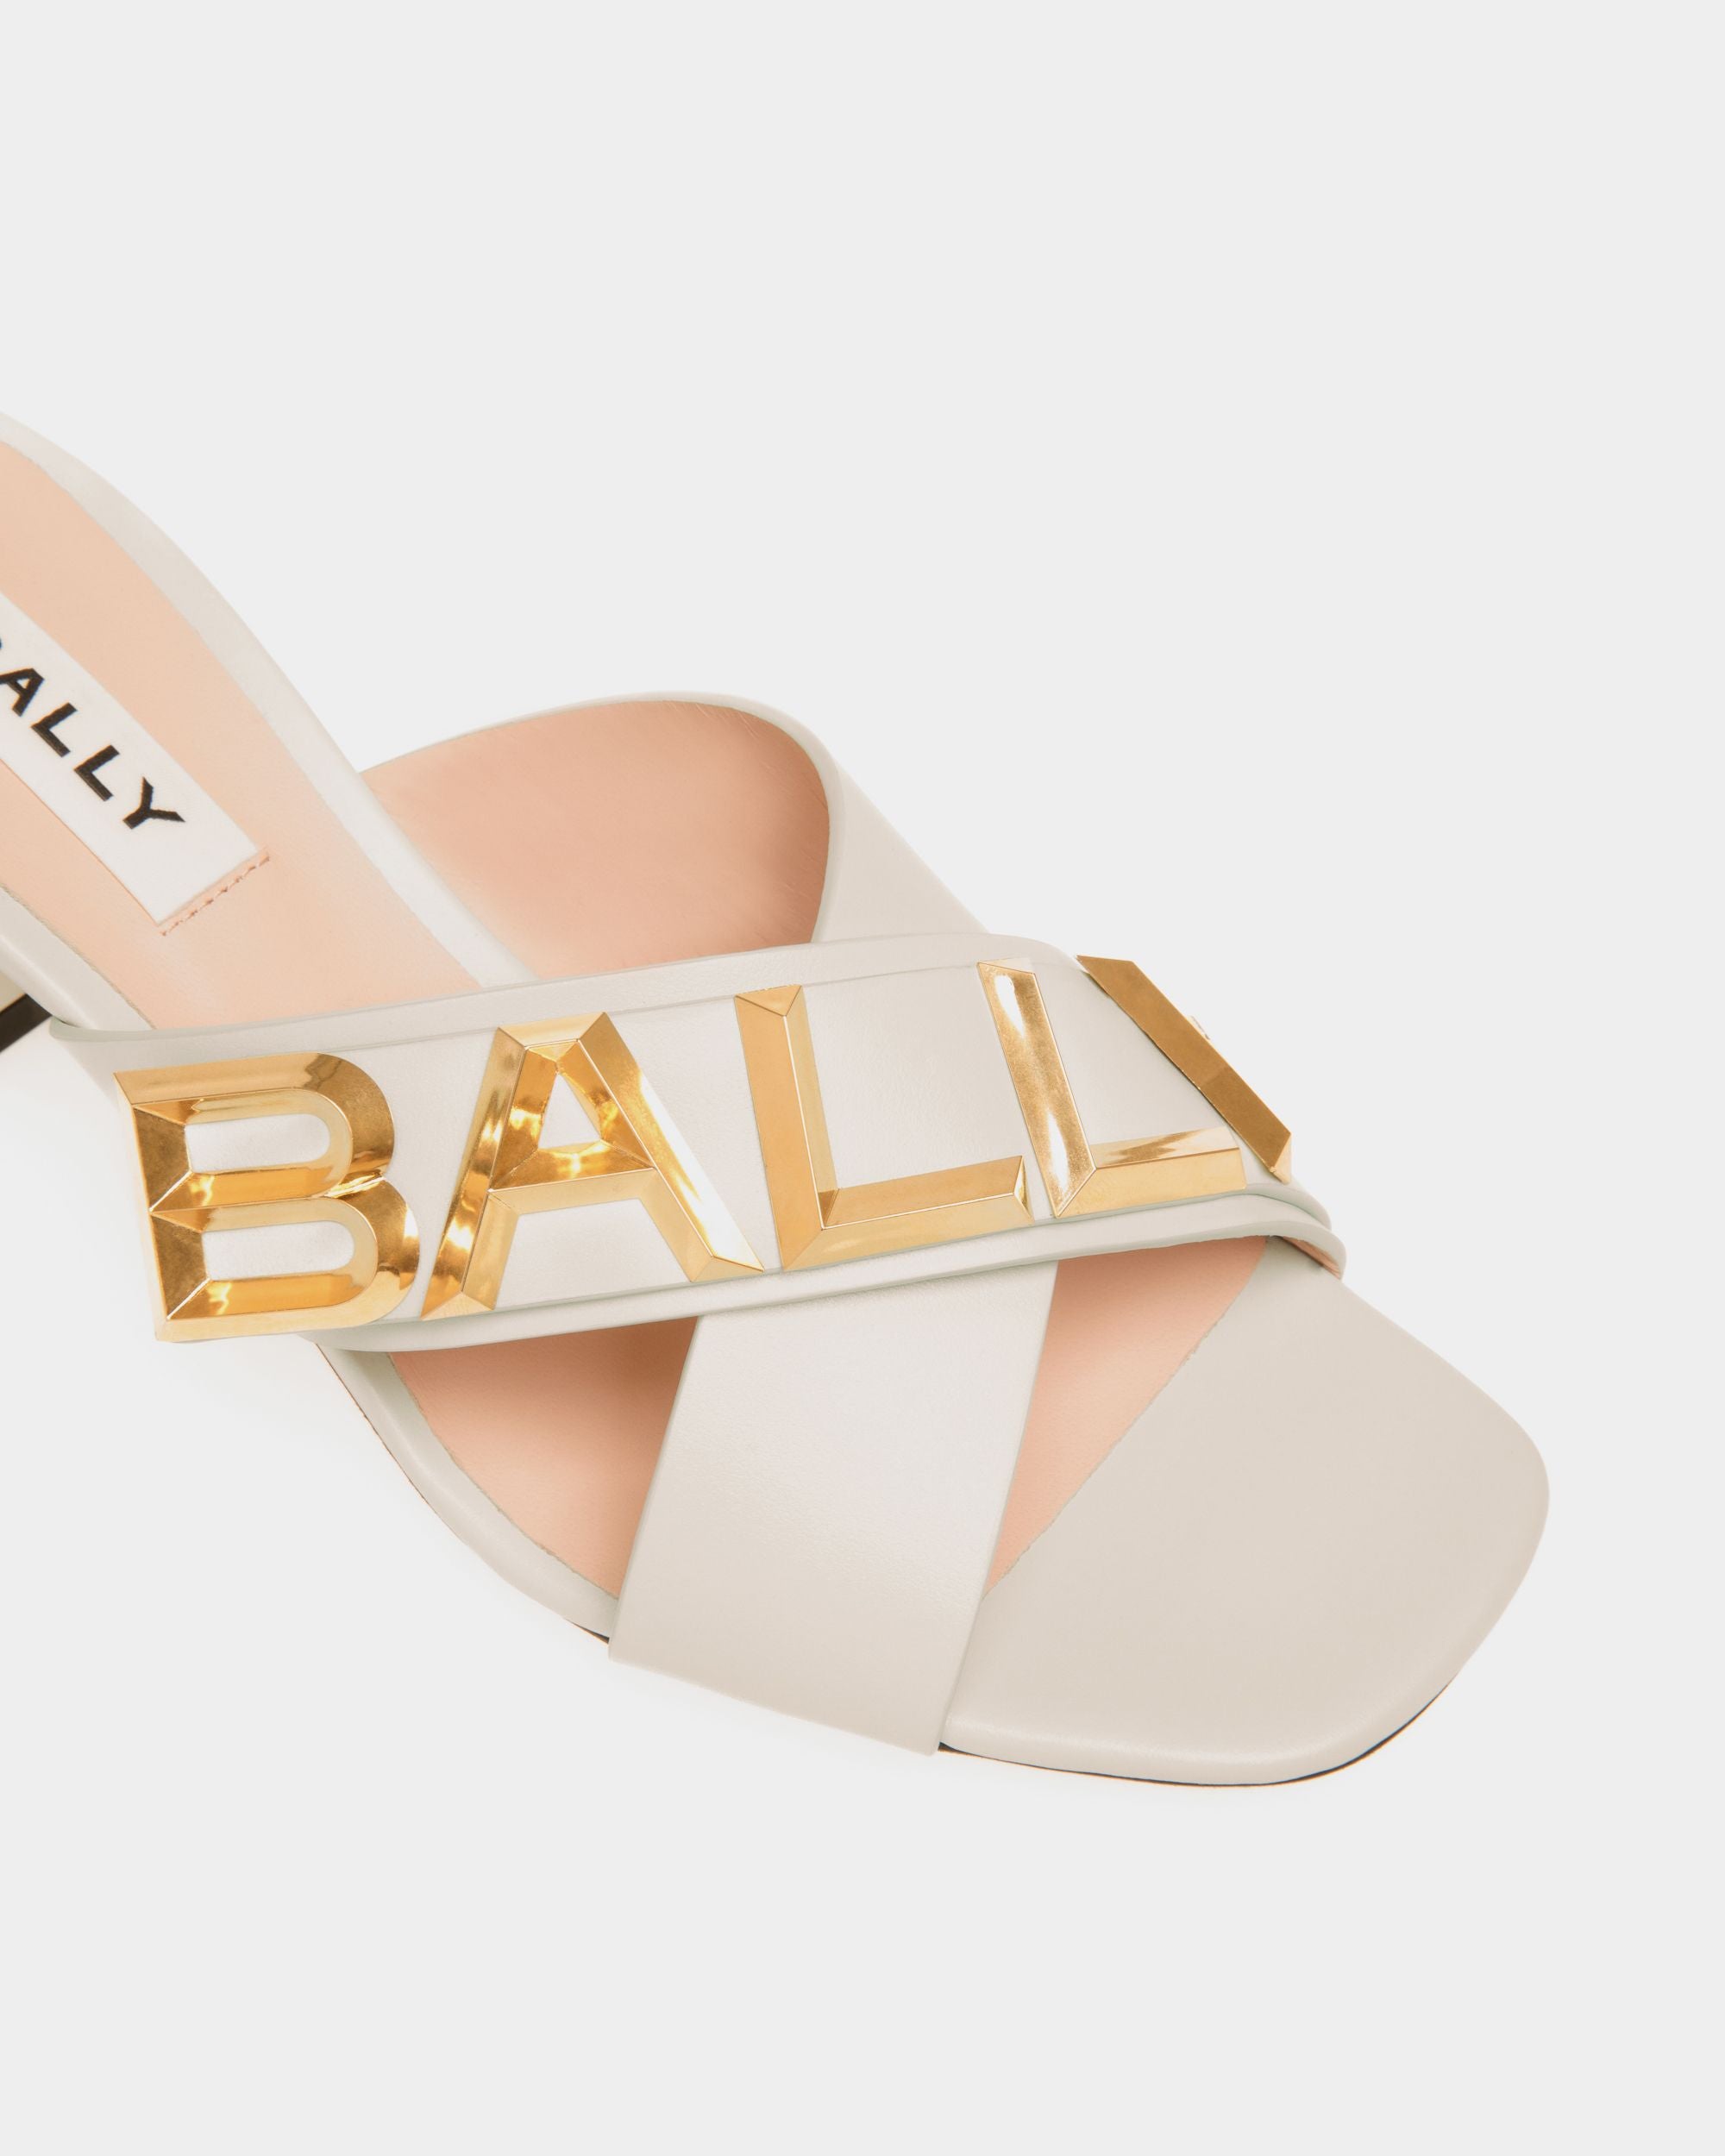 Bally Spell | Women's Heeled Slide in White Leather | Bally | Still Life Detail